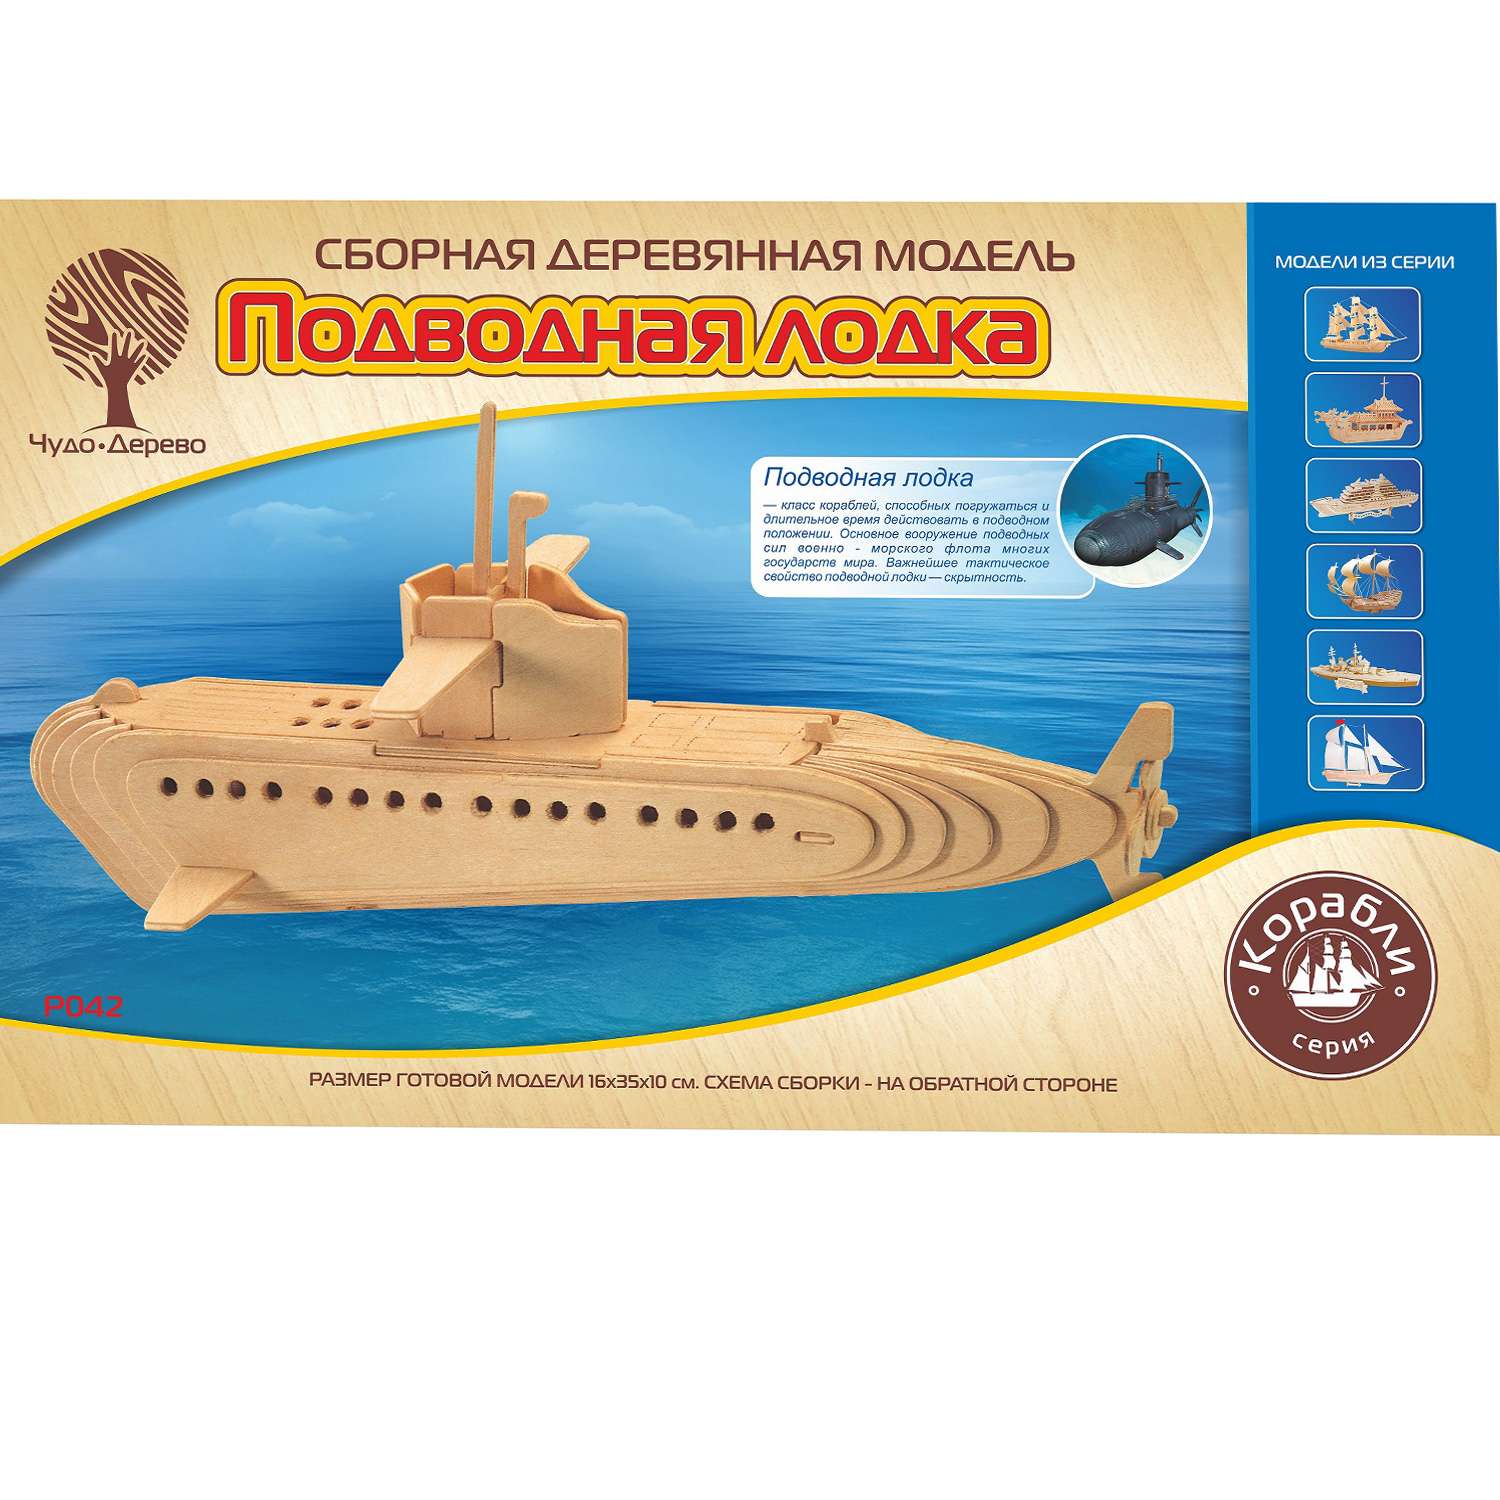 Сборная модель Чудо-Дерево Подводная лодка субмарина P042 - фото 1